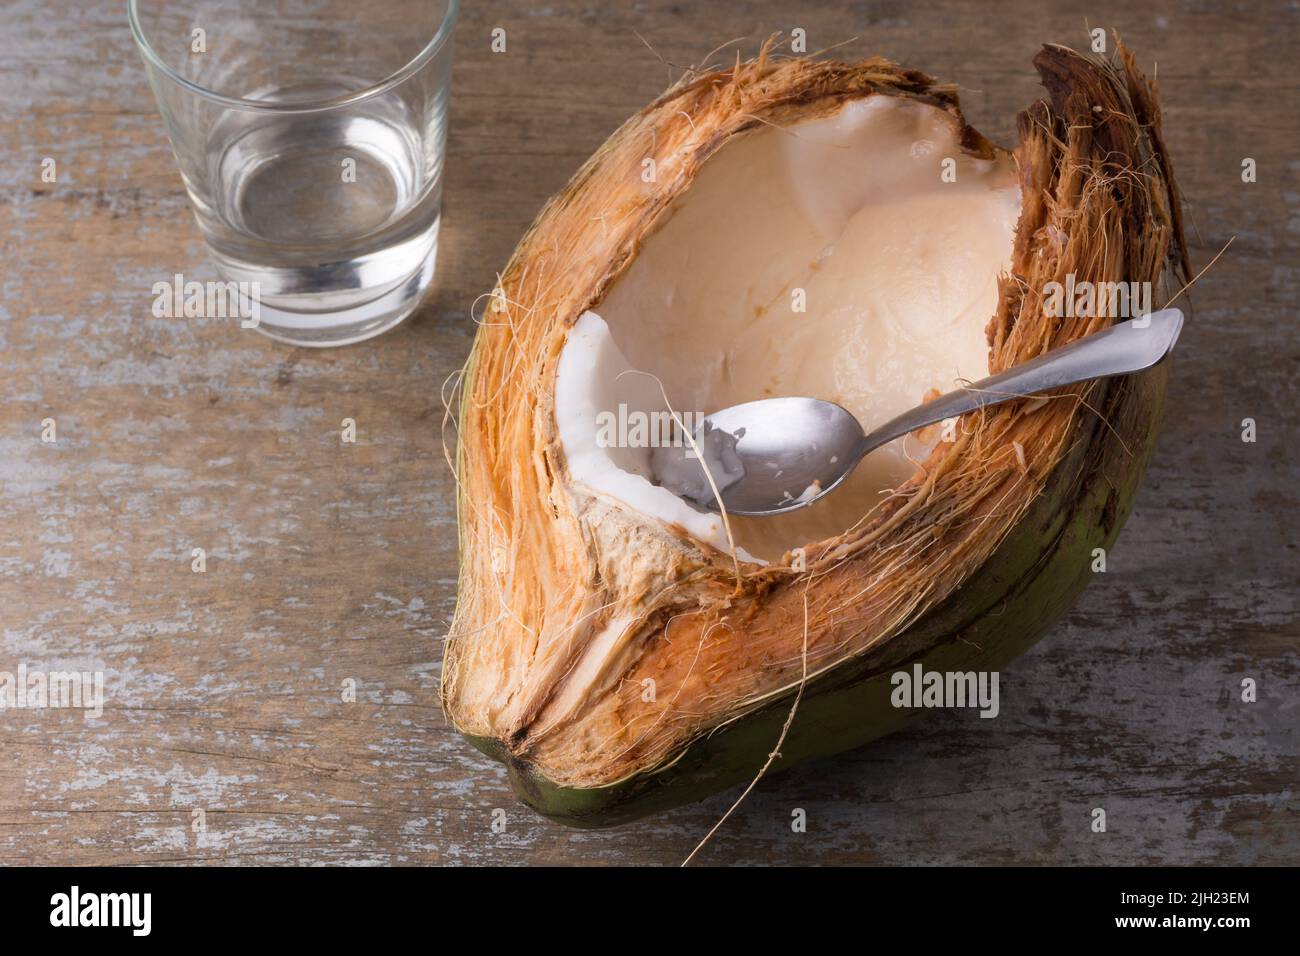 Essen von jungem Kokosfleisch direkt aus der Schale mit einem Löffel, weißes Fleisch von gesunden tropischen Früchten auf einer Holztischplatte, Platz für Text Stockfoto